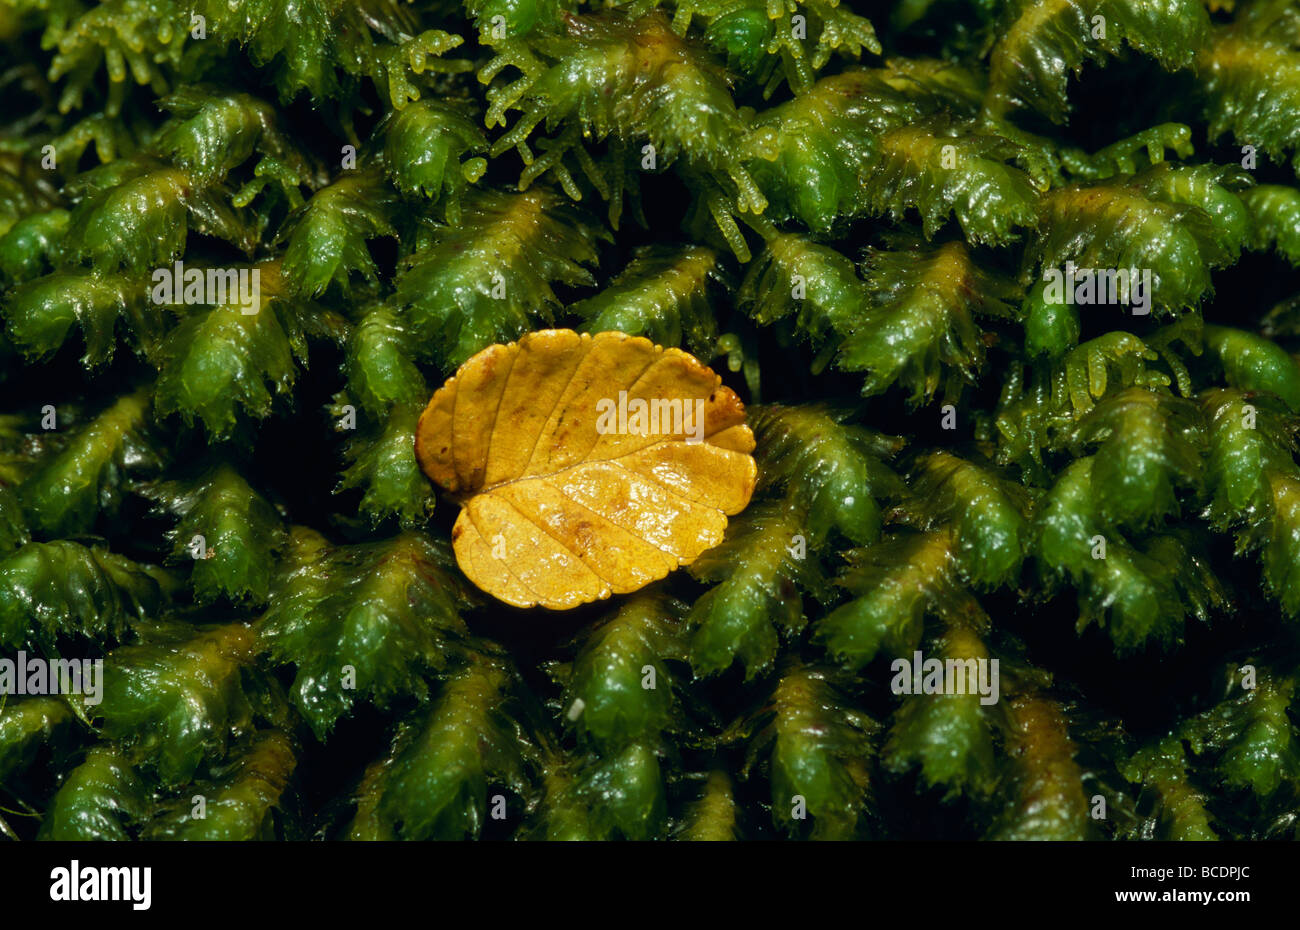 A fallen Deciduous Beech, Nothofagus gunnii, leaf on a moss bryophyte. Stock Photo